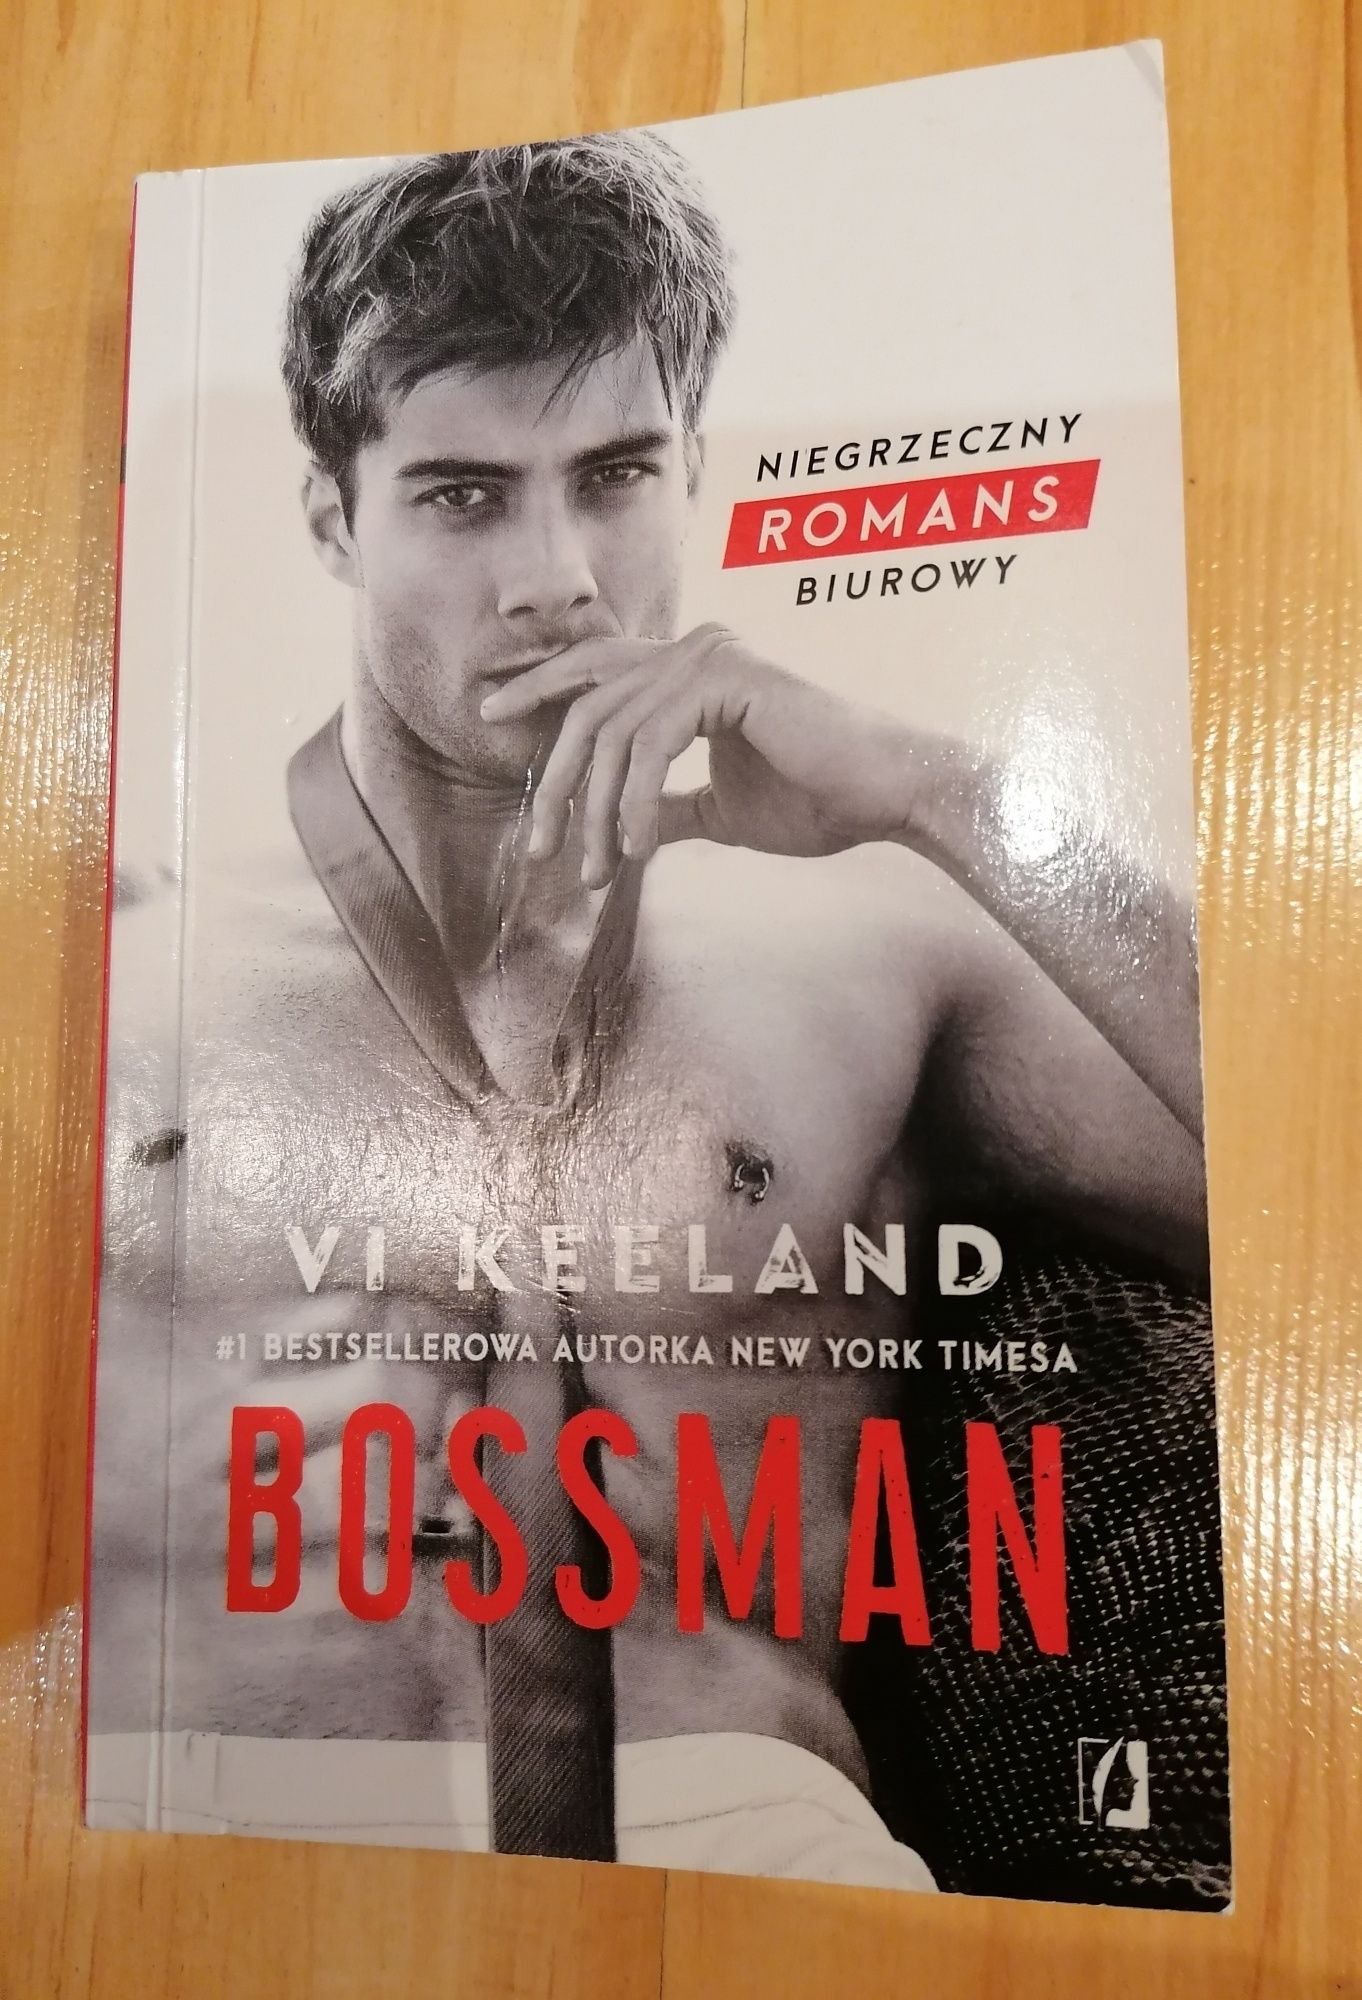 Bossman książka 
Vi keeland
Niegrzeczny Romans biurowy